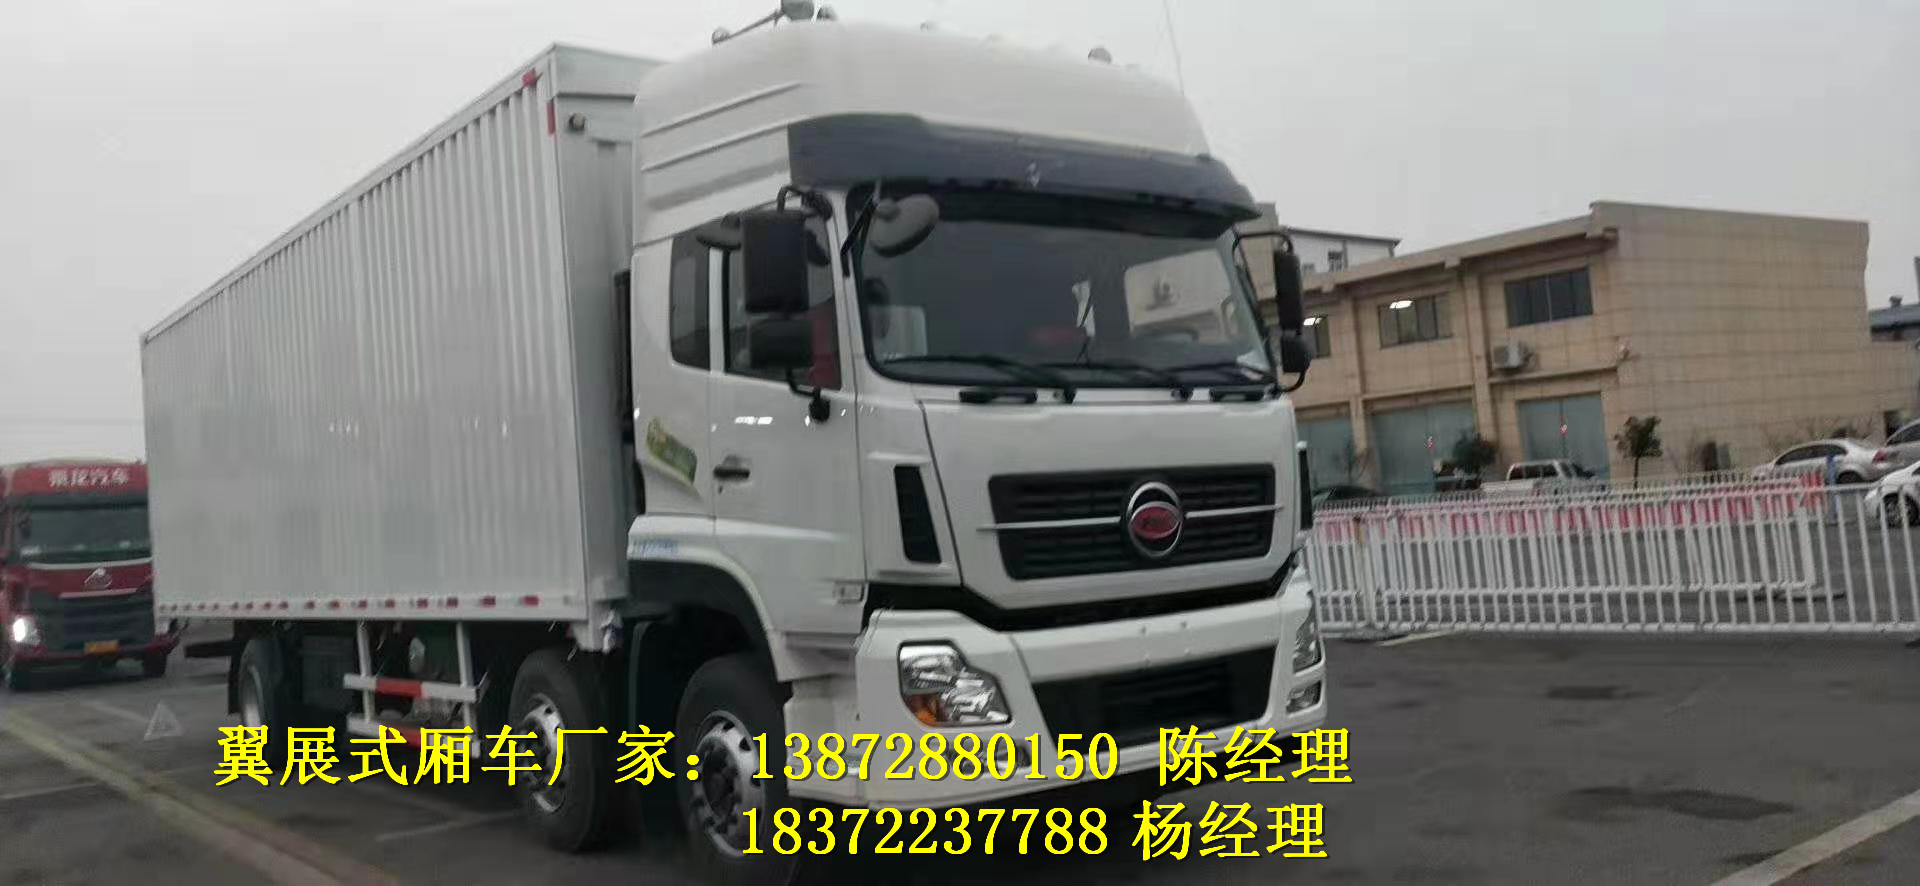 天津周边易燃液体运输车具体介绍危险品厢式车